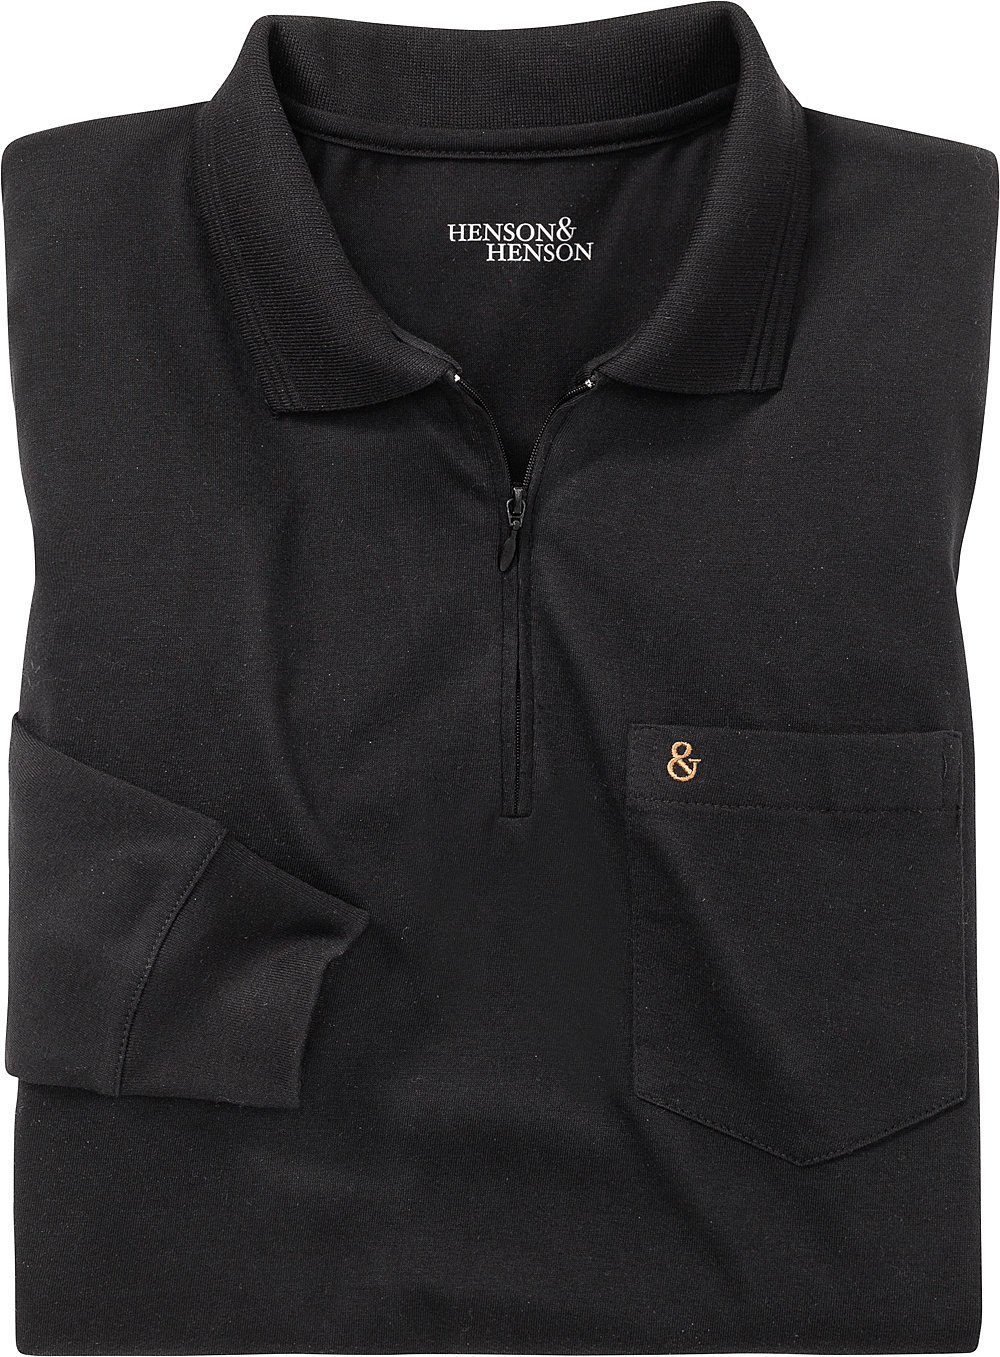 HENSON&HENSON superweiches Jersey-Gewebe Langarm-Poloshirt schwarz